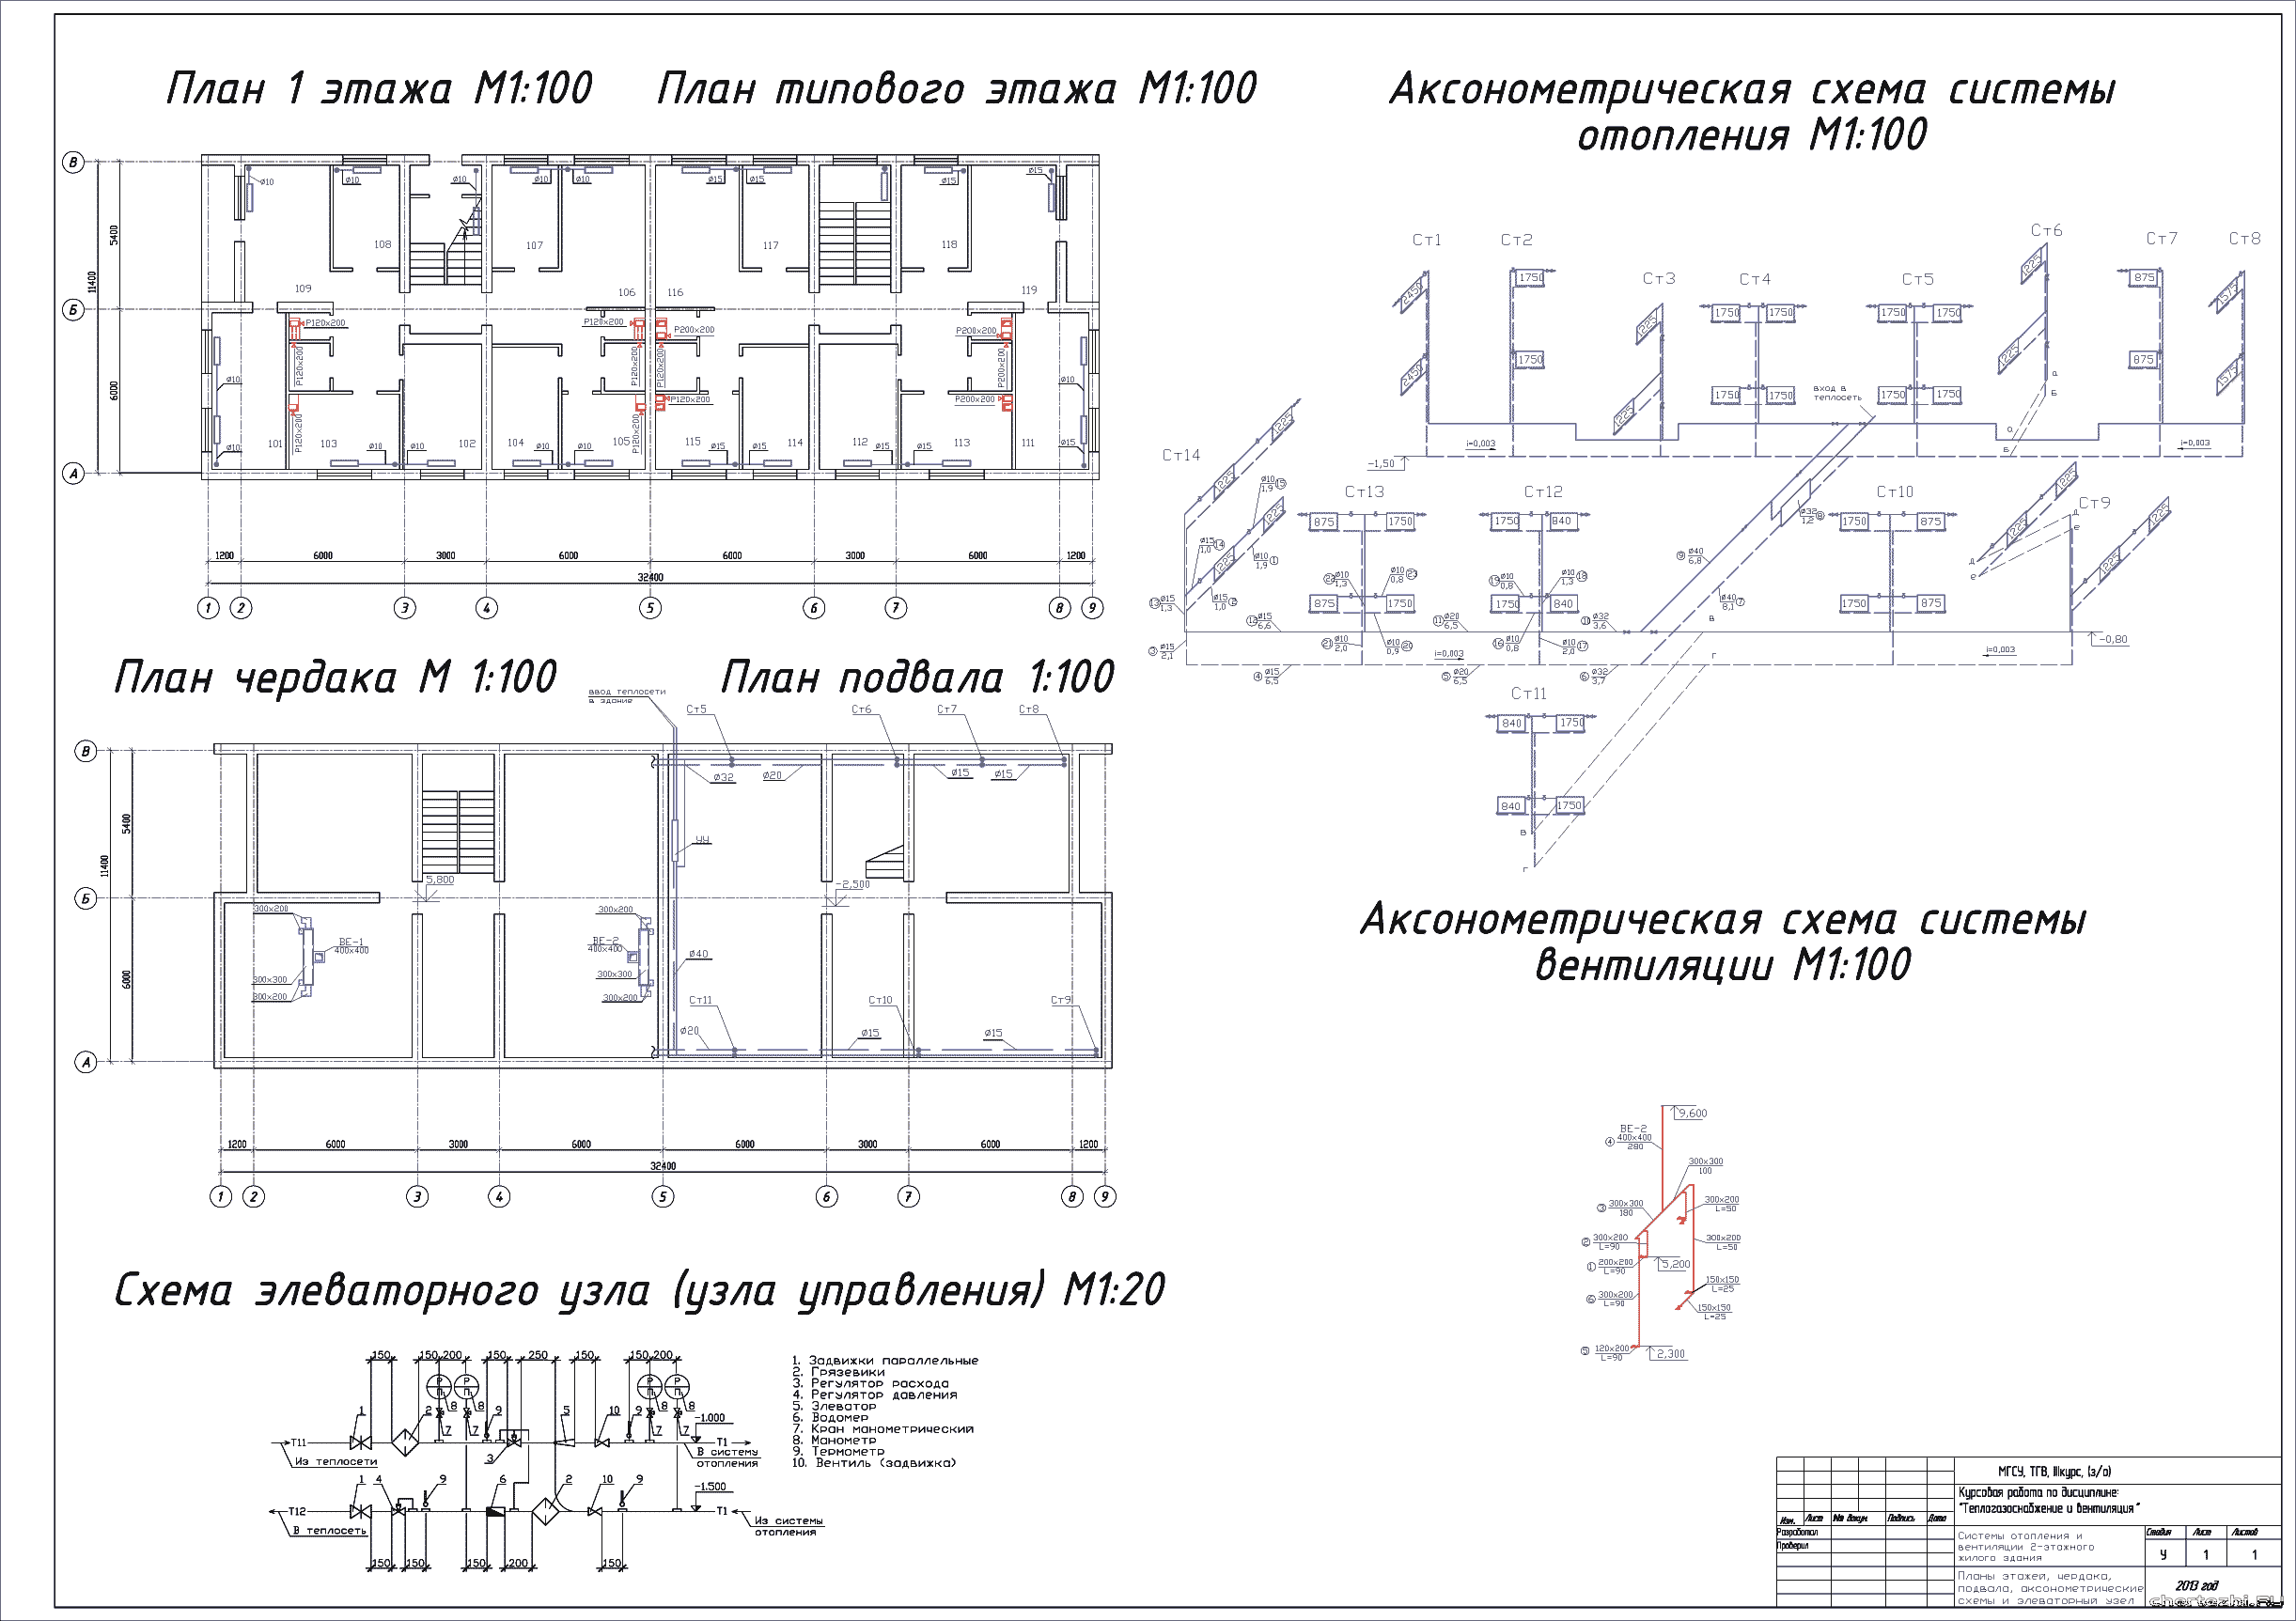 Курсовой проект - Системы отопления и вентиляции 2 - х этажного жилого здания в г. Томск